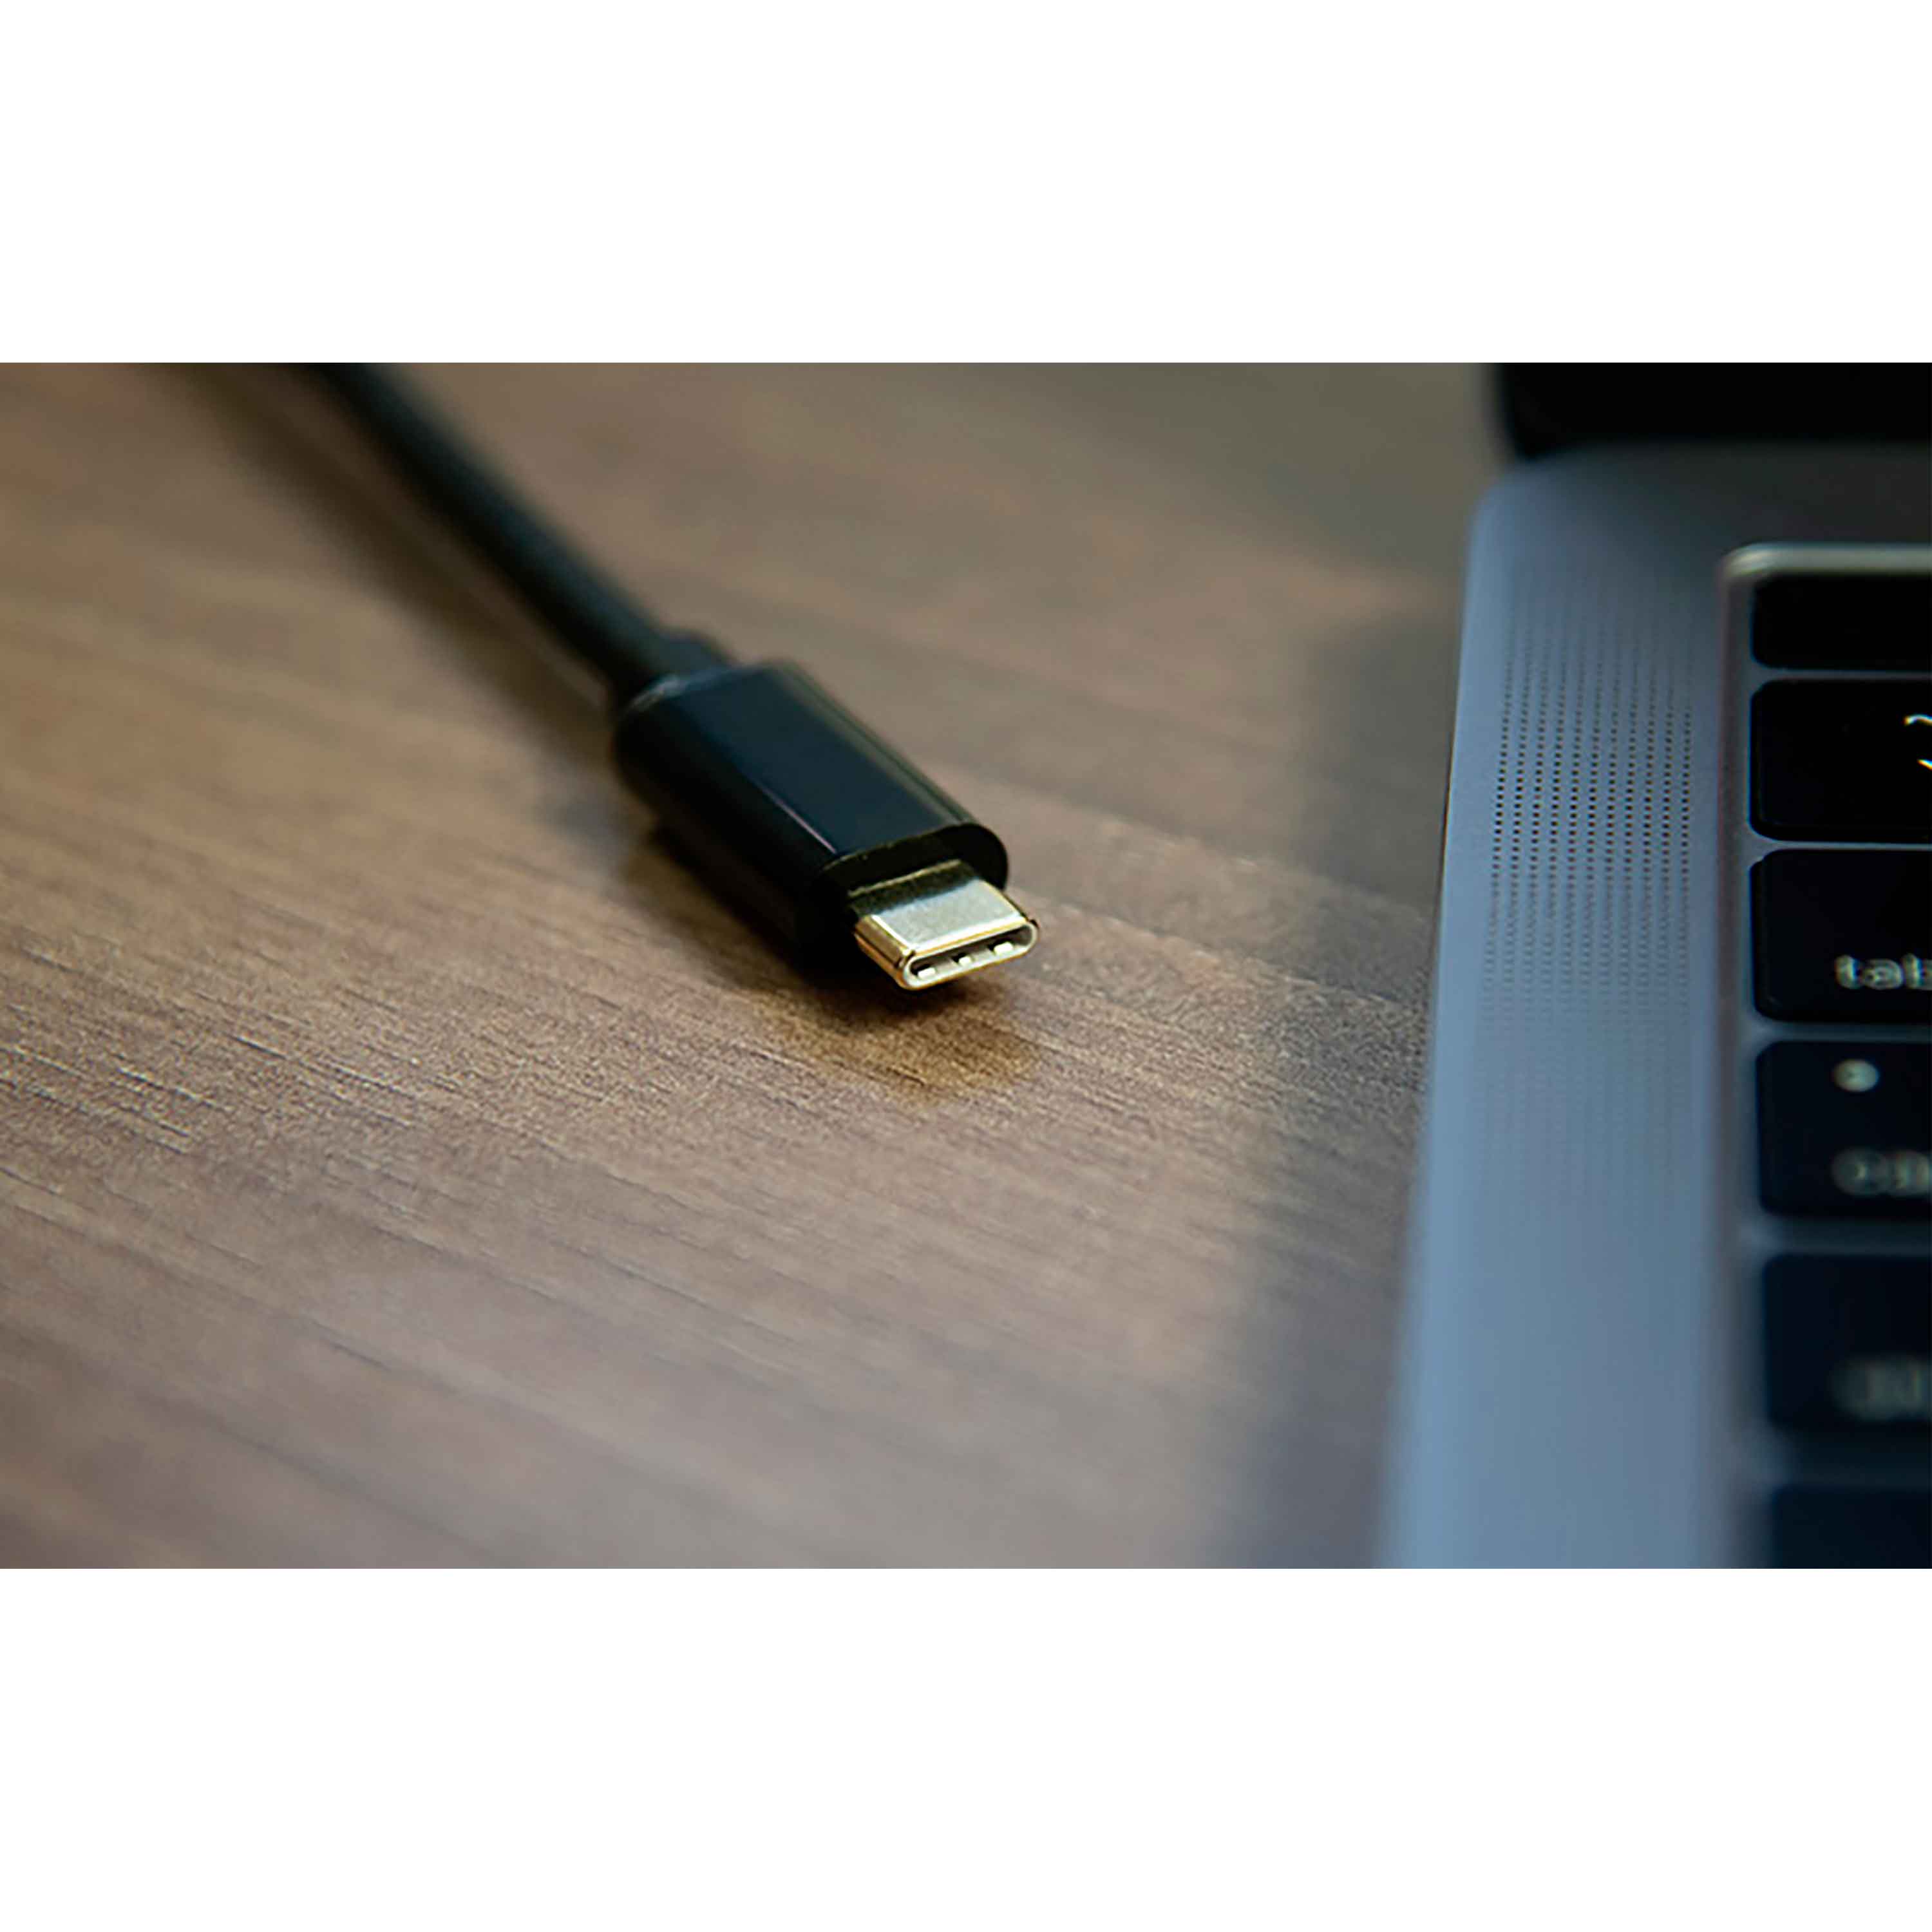 CABLE CONVERSOR DE USB TIPO C A HDMI XTECH XTC545